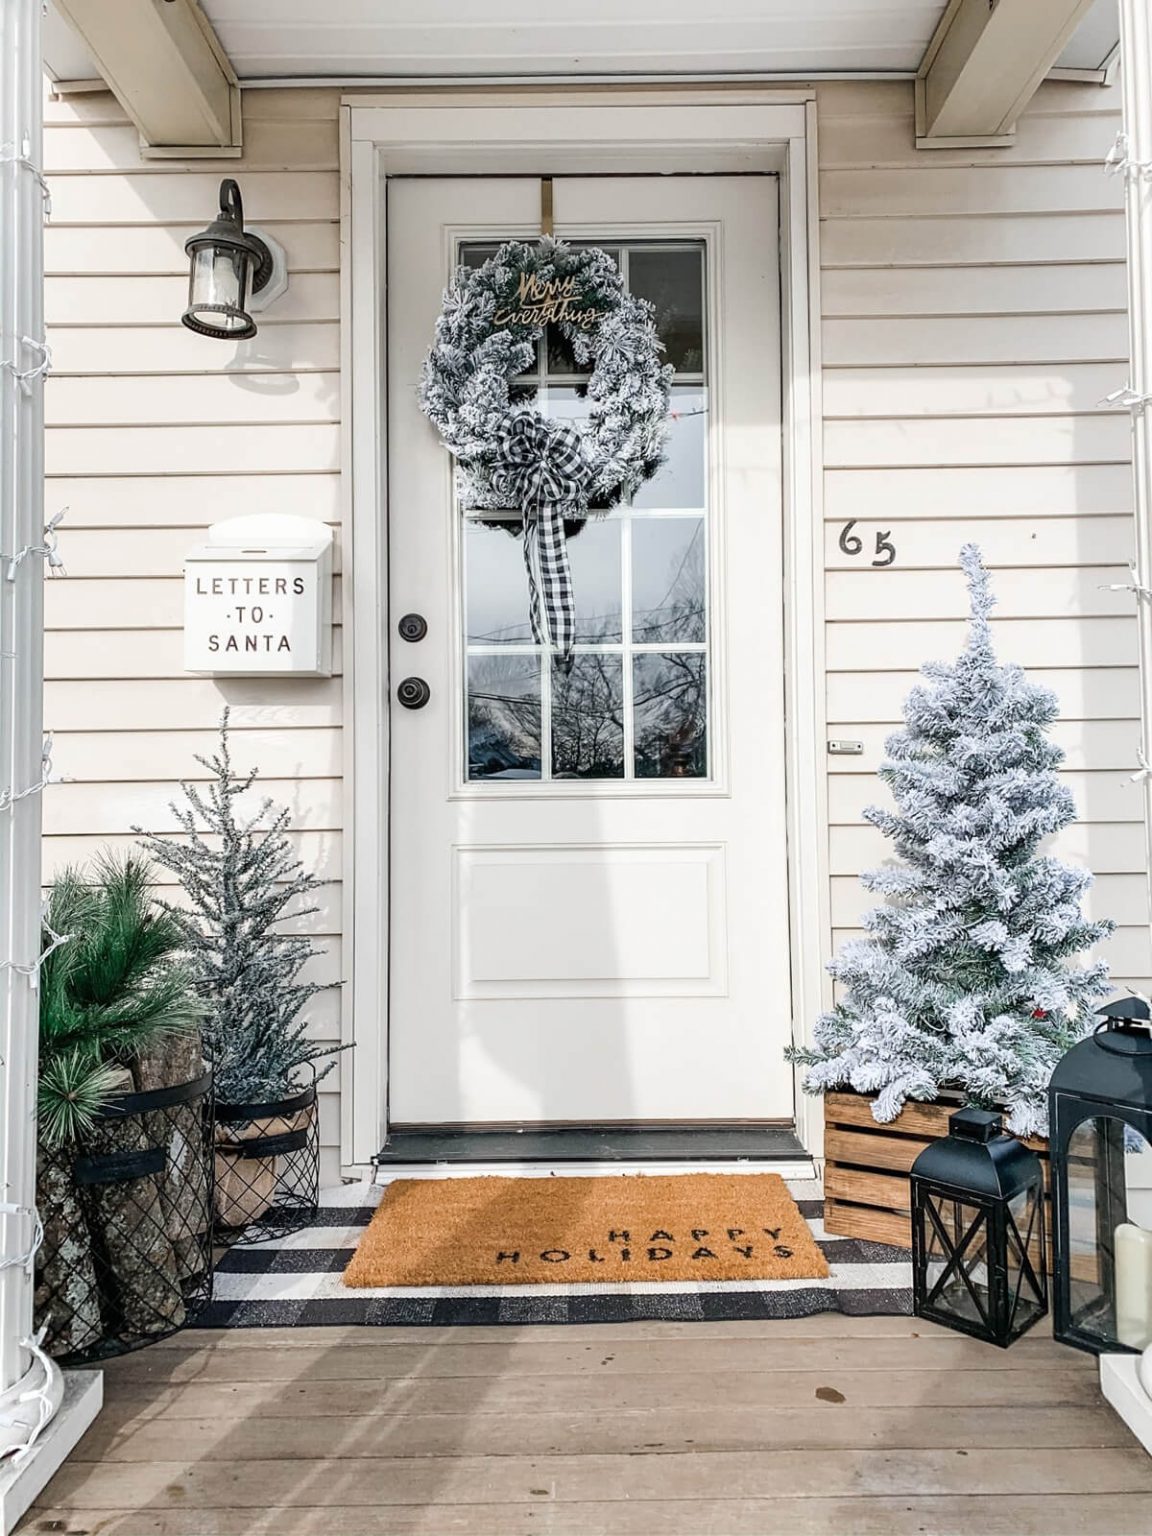 02d-christmas-porch-decoration-ideas-homebnc-v3-1152x1536